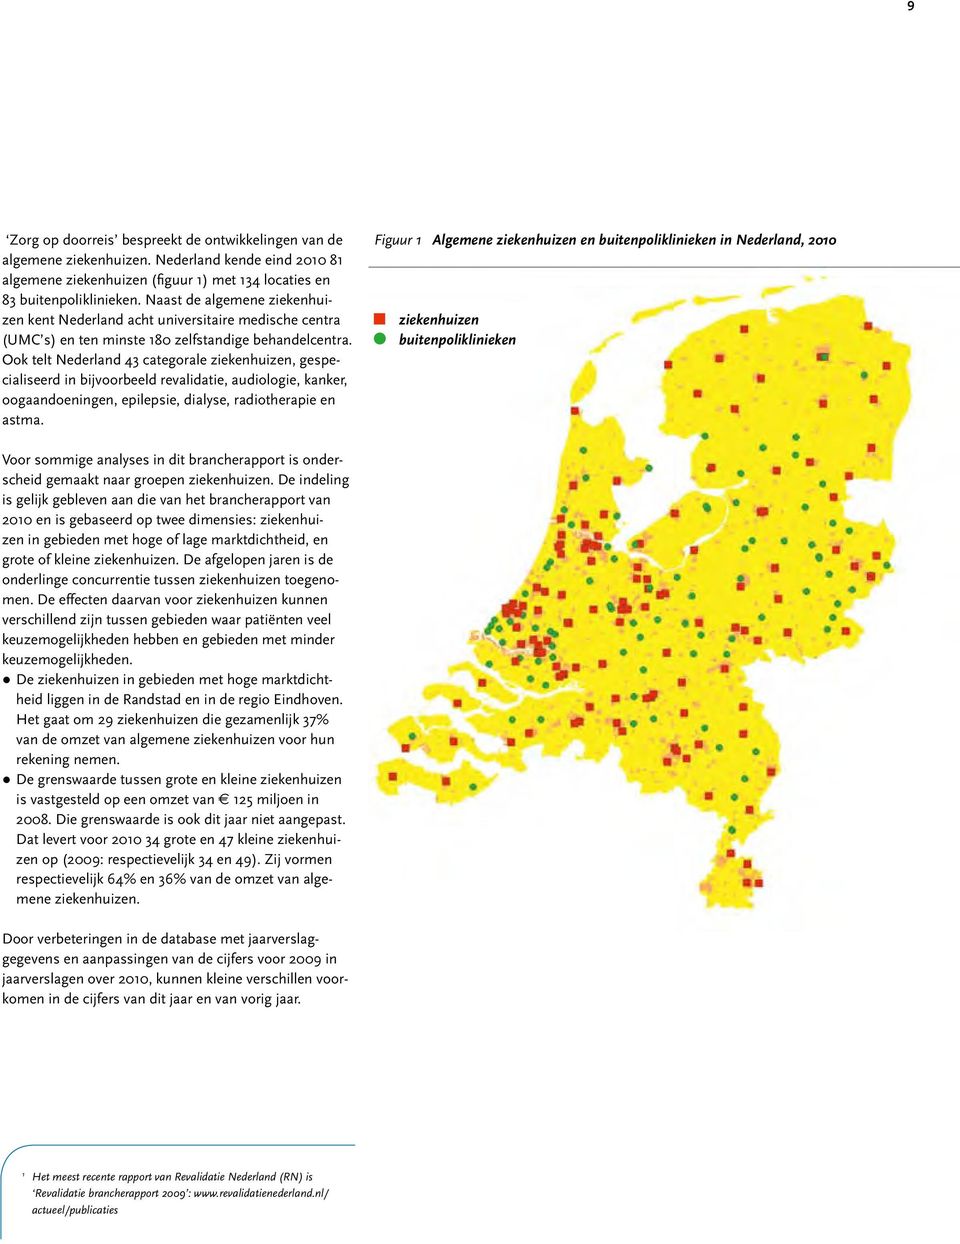 Ook telt Nederland 43 categorale ziekenhuizen, gespecialiseerd in bijvoorbeeld revalidatie, audiologie, kanker, oogaandoeningen, epilepsie, dialyse, radiotherapie en astma.